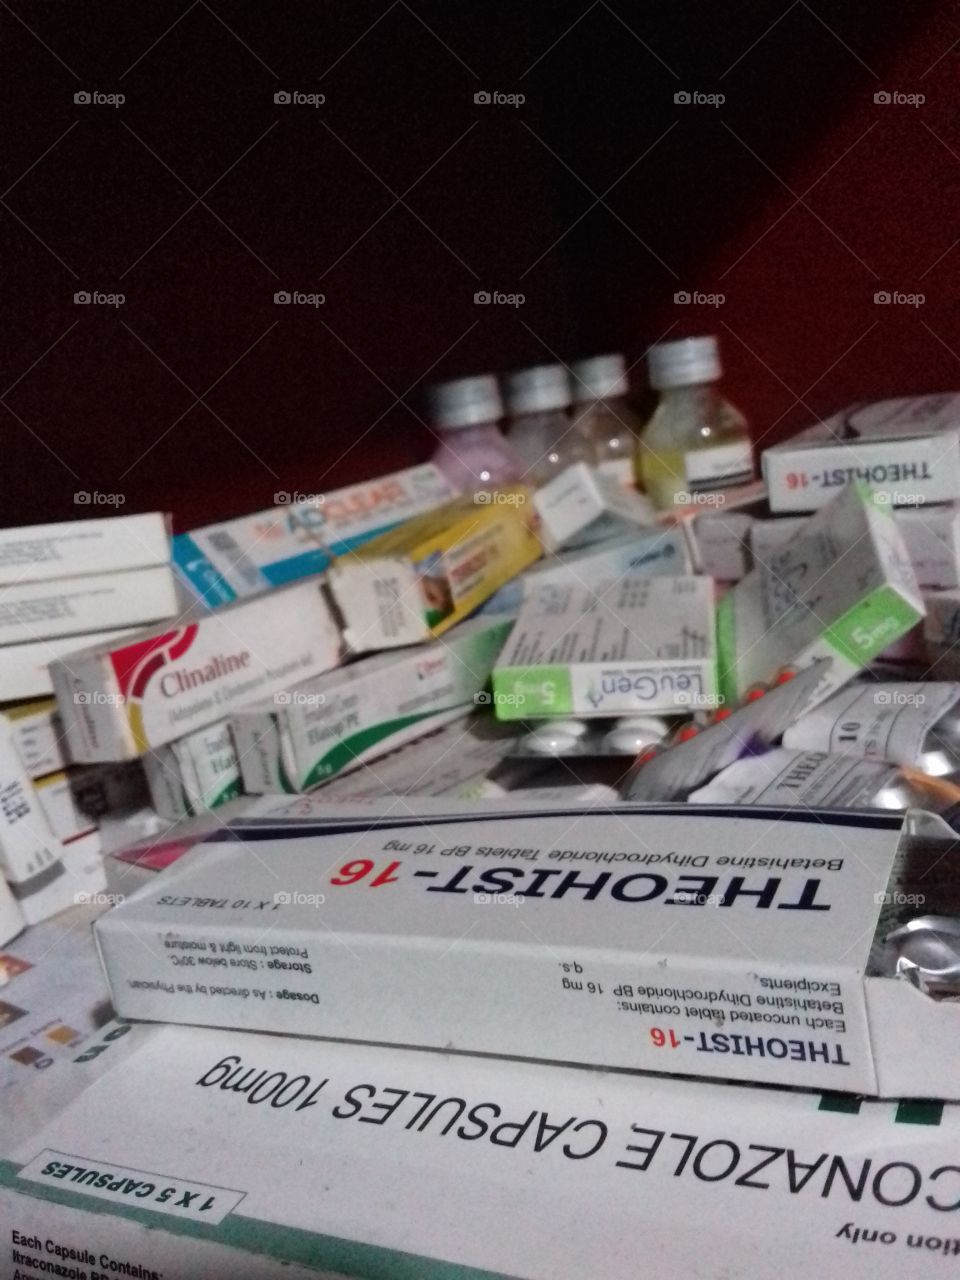 medicines